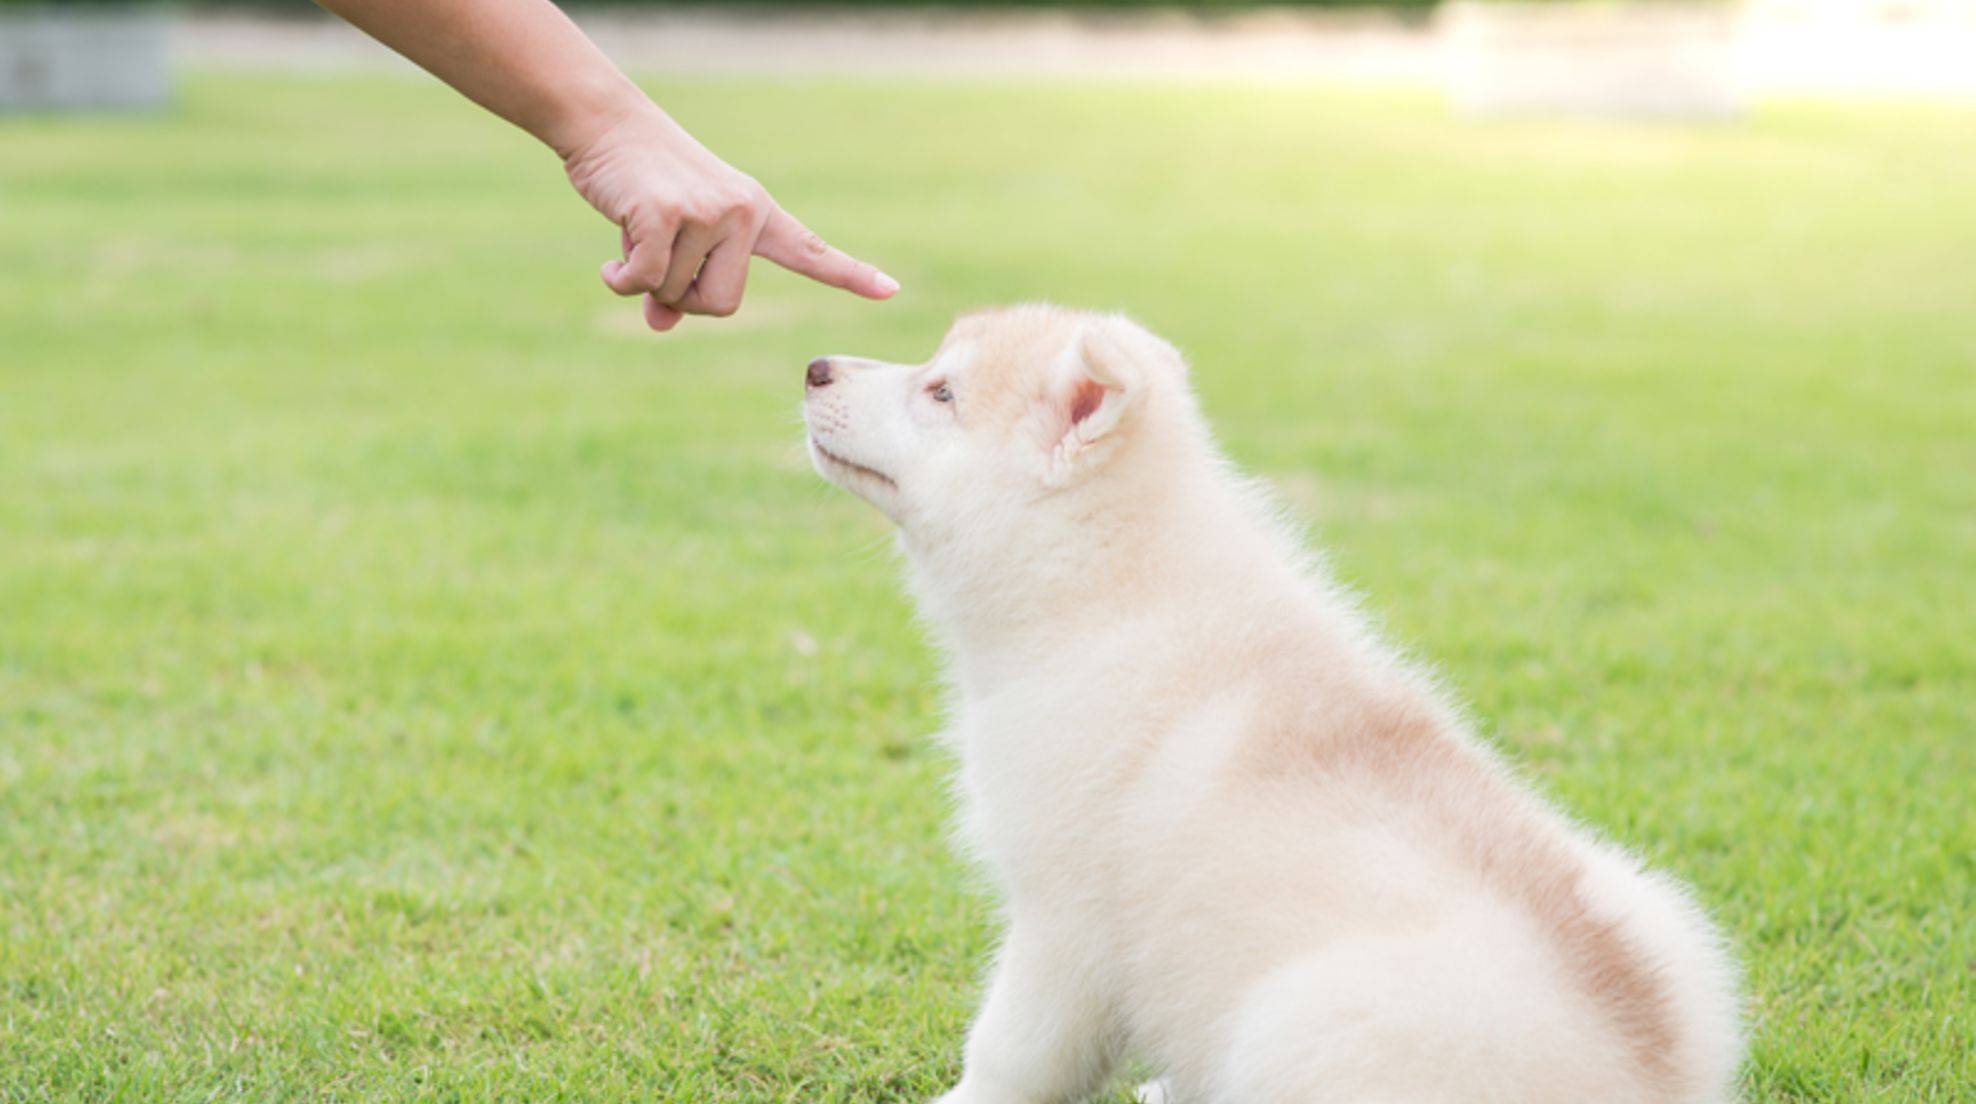 Punish dog: tips for dog training